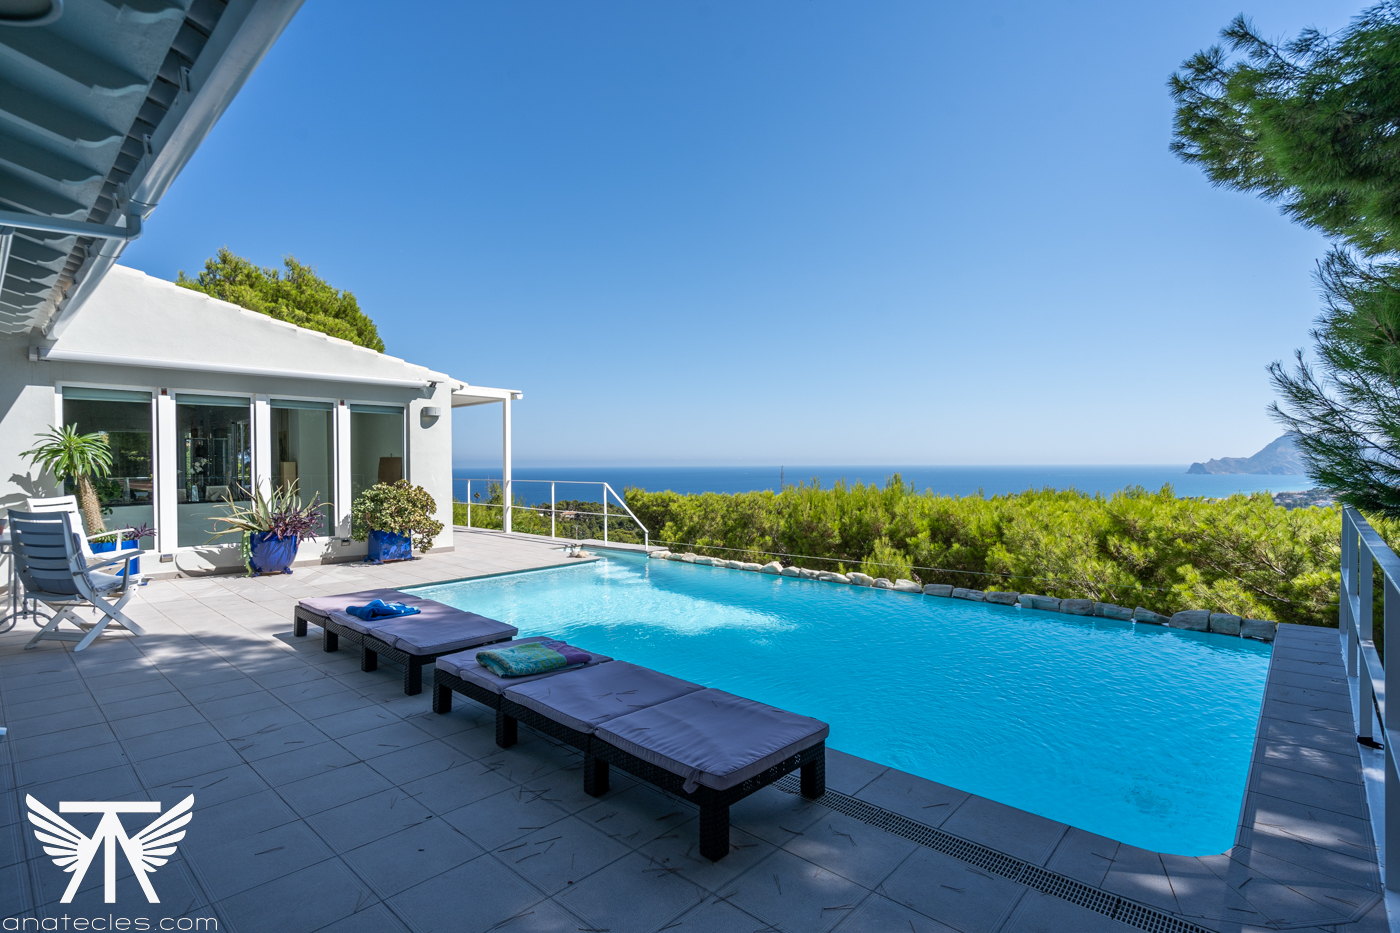 Te Koop: Villa aan zee met panoramisch uitzicht - Uw droomhuis!